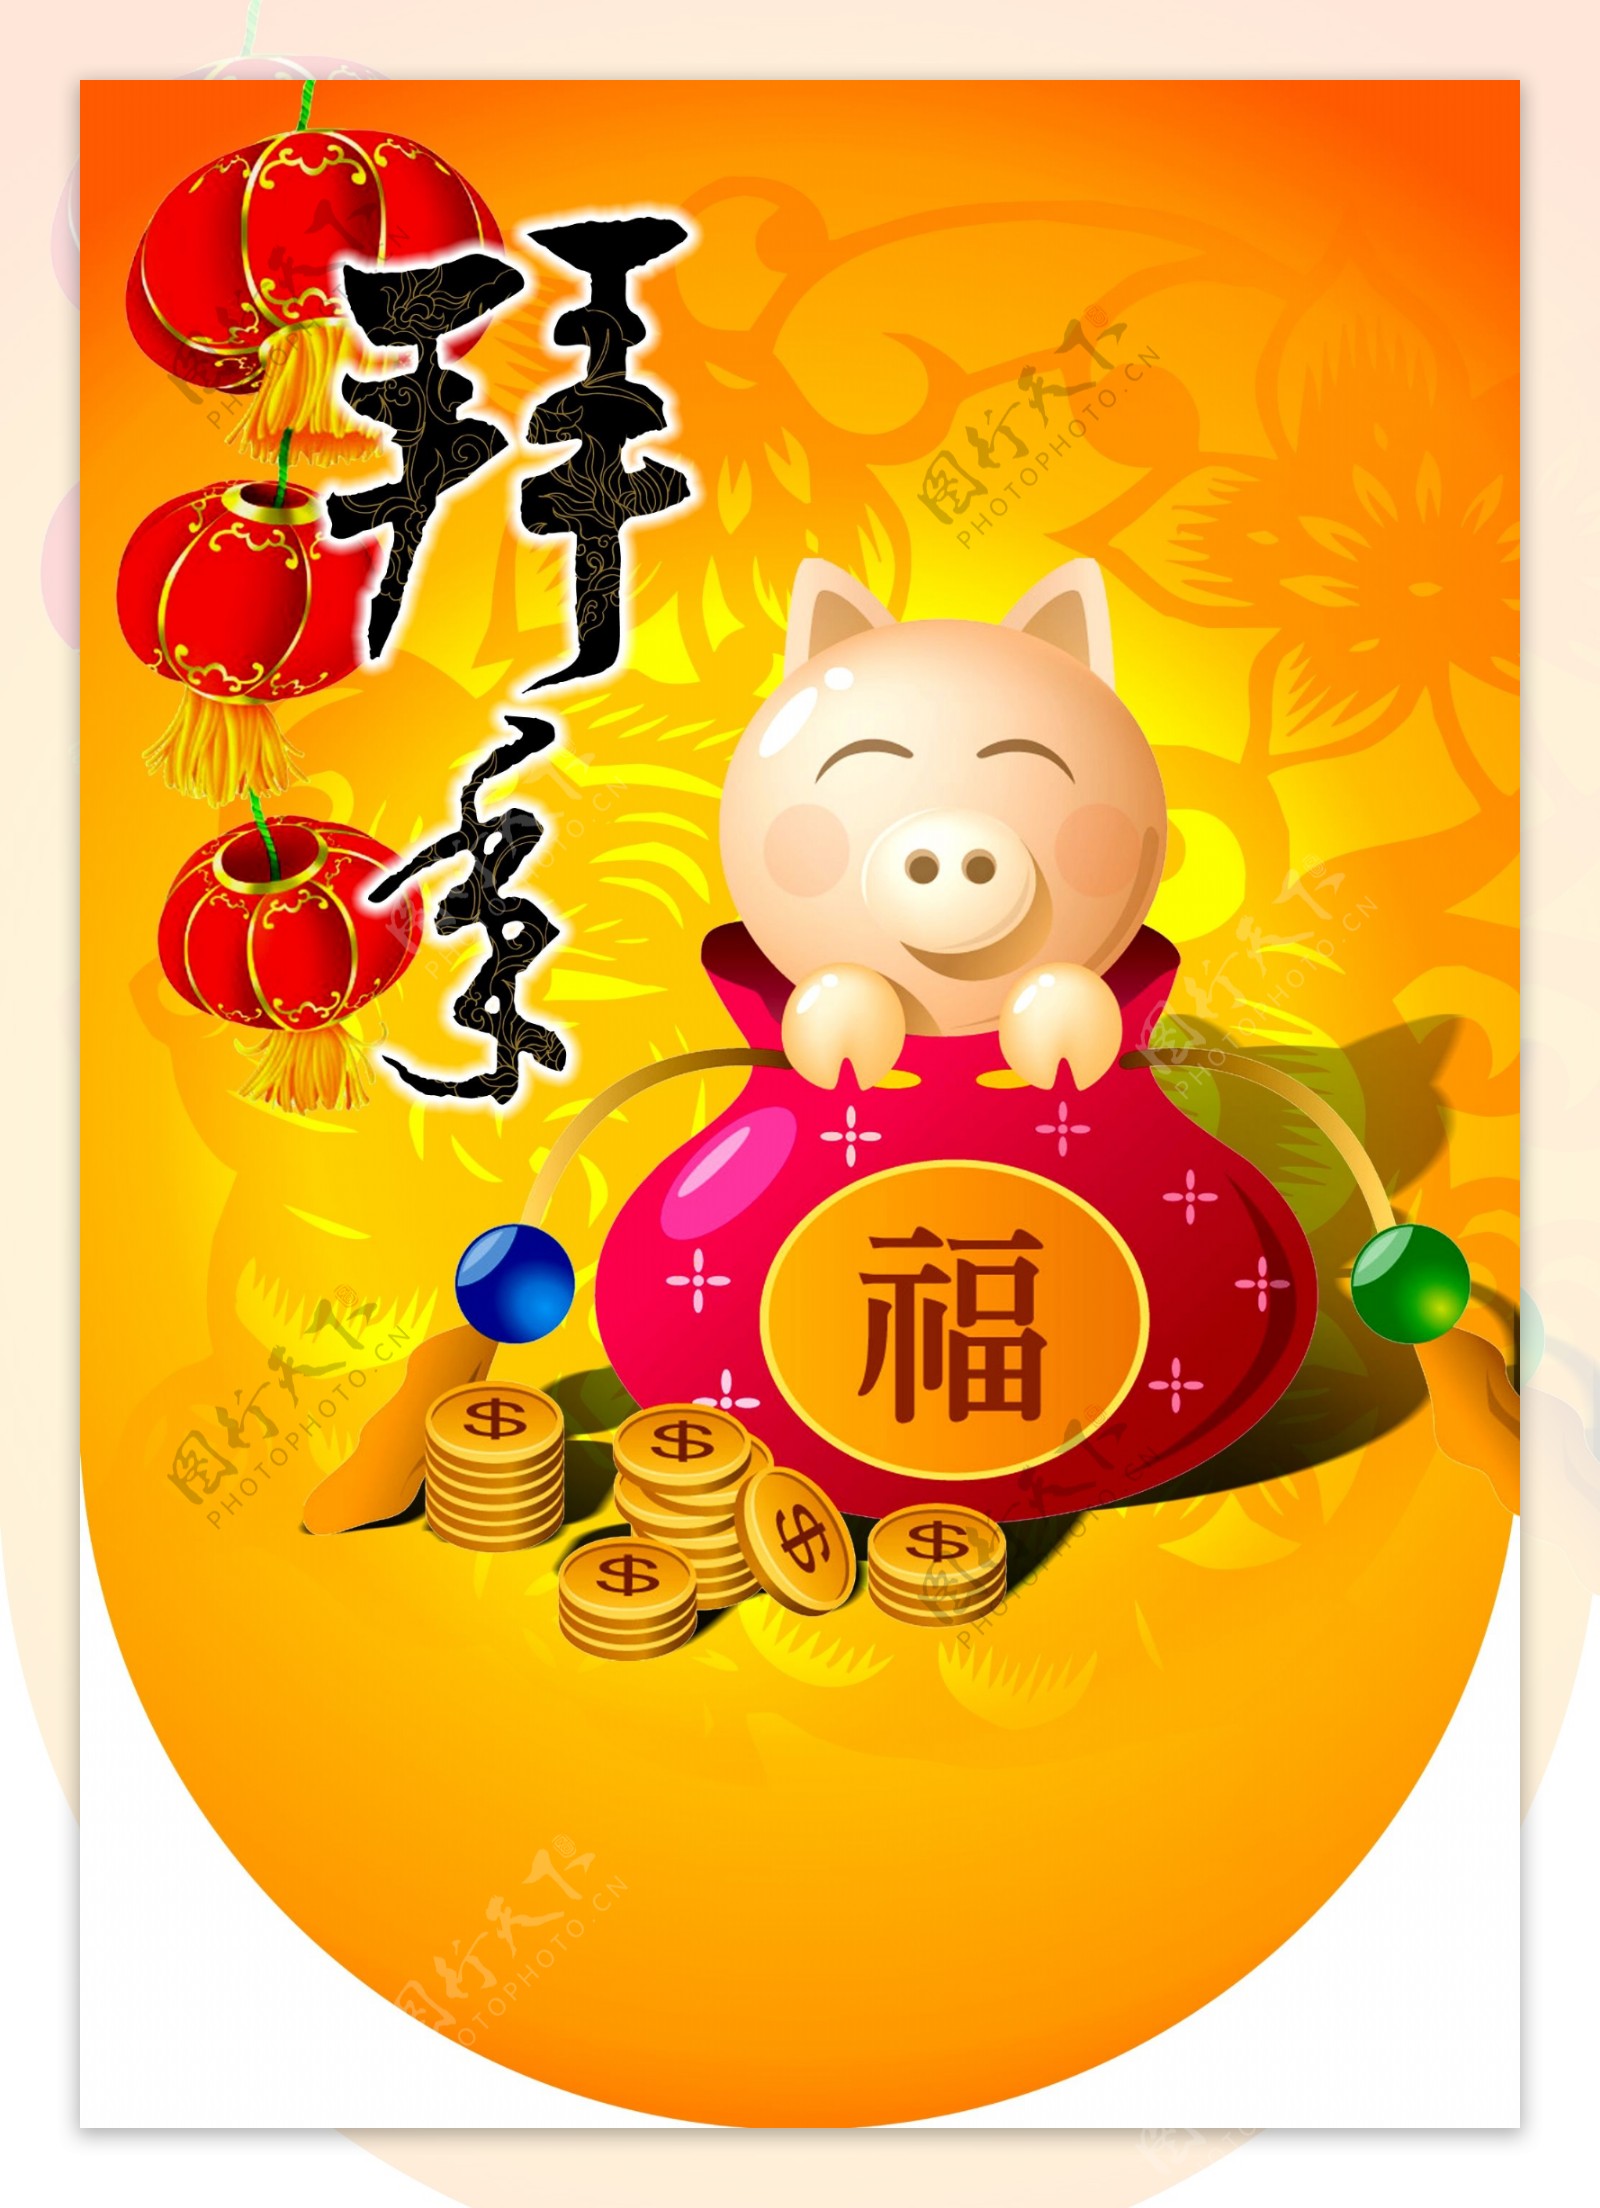 春节新年运动品牌猪年拜年新春快乐吊旗图片